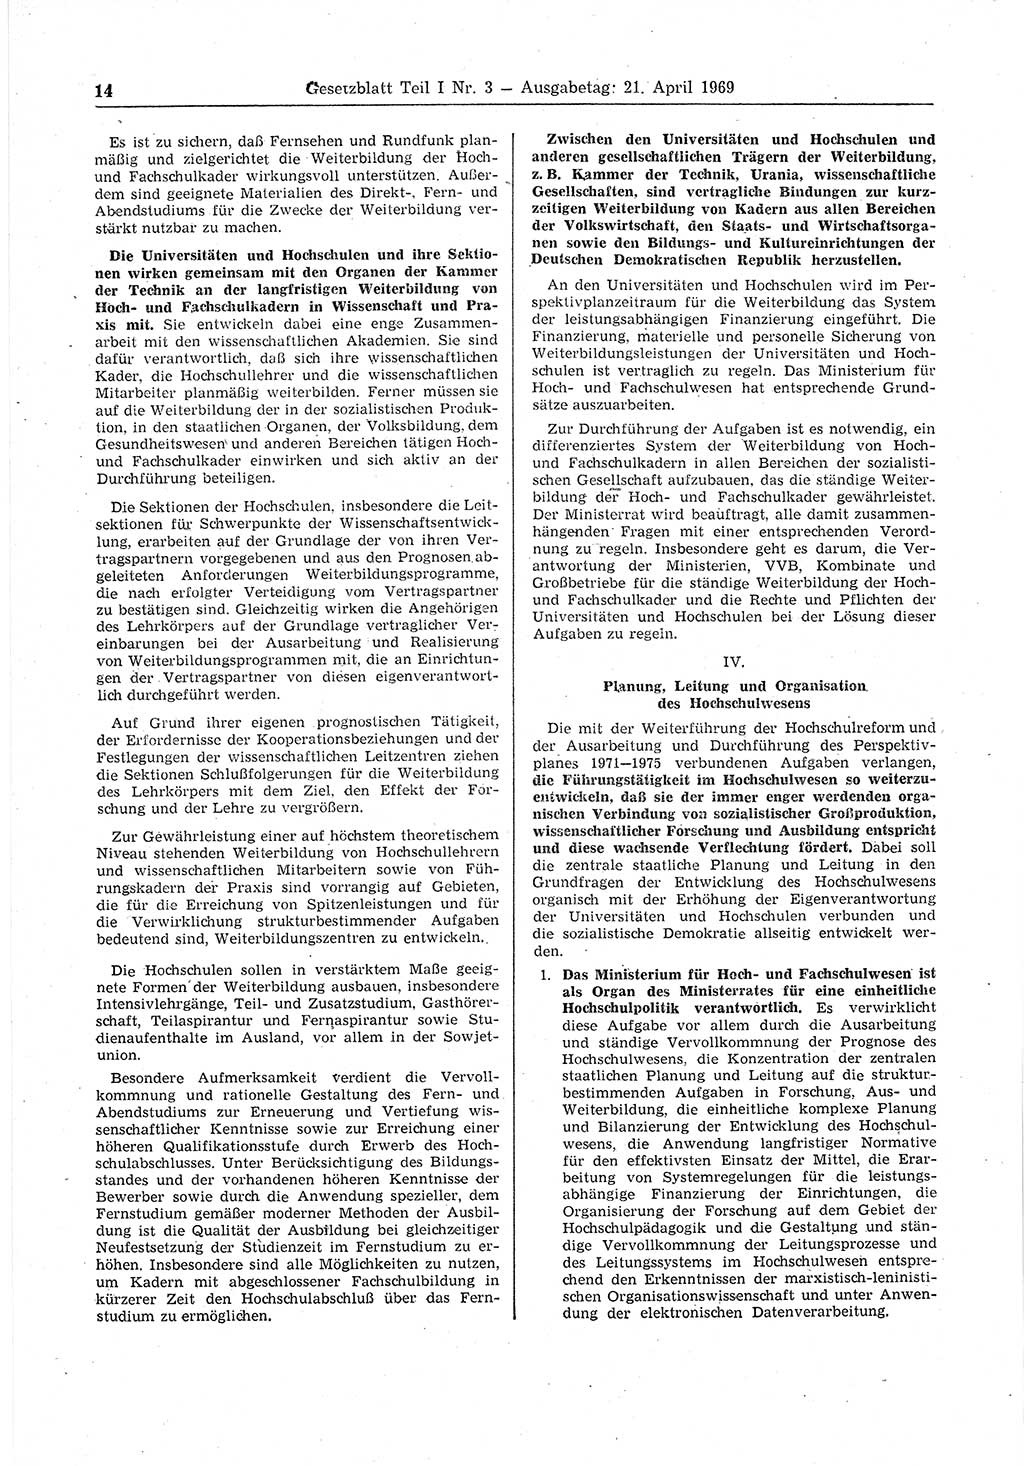 Gesetzblatt (GBl.) der Deutschen Demokratischen Republik (DDR) Teil Ⅰ 1969, Seite 14 (GBl. DDR Ⅰ 1969, S. 14)